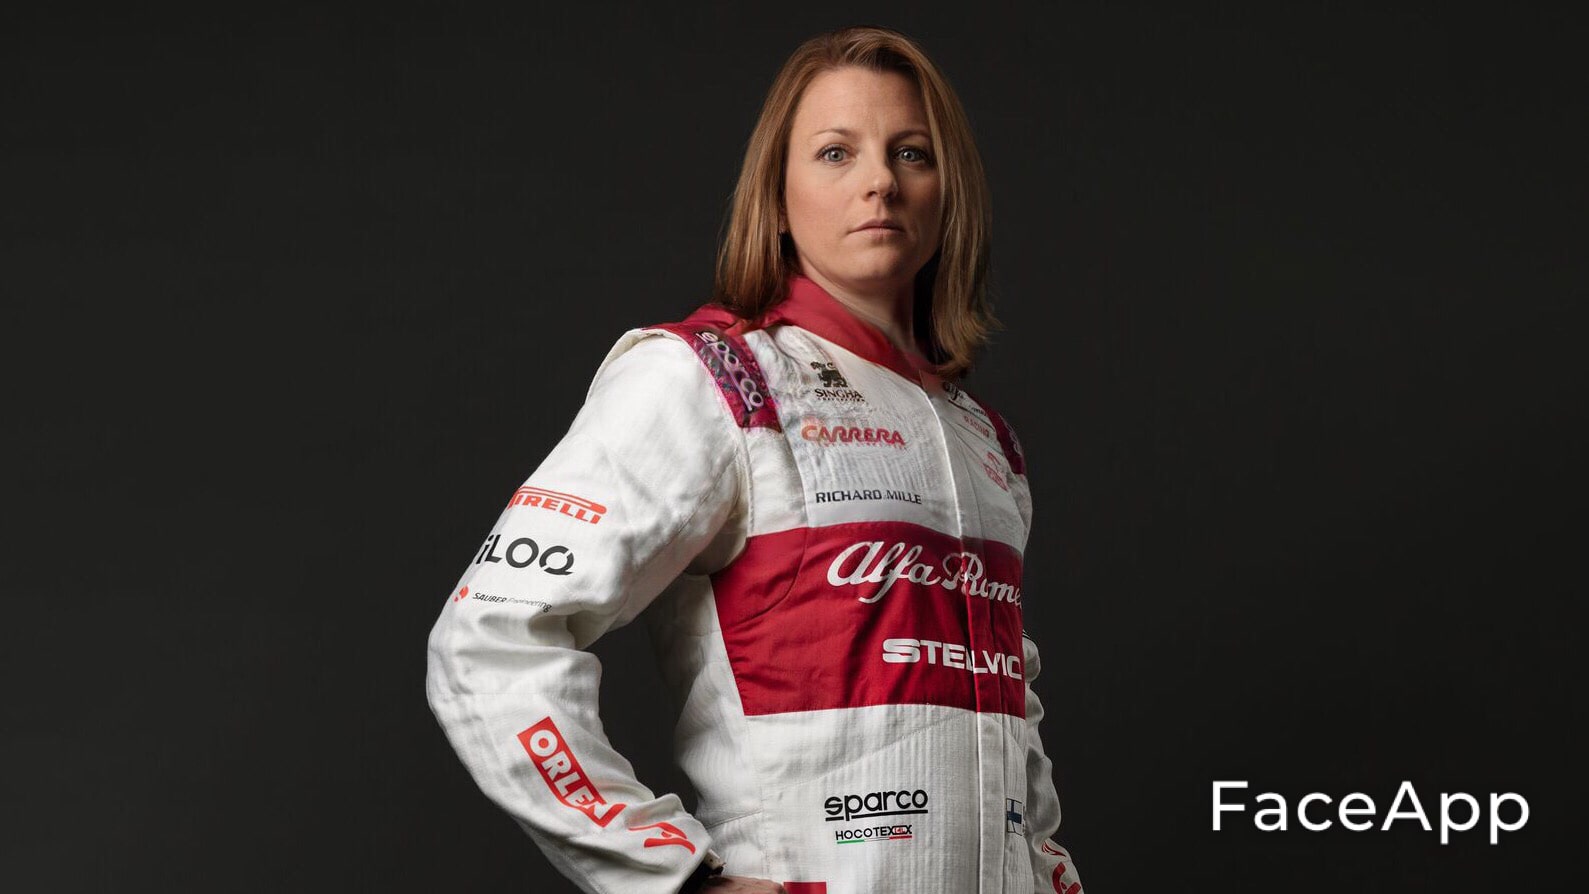 A versão feminina de Kimi Räikkönen, da Alfa Romeo, seria mais falante e eloquente que a masculina?